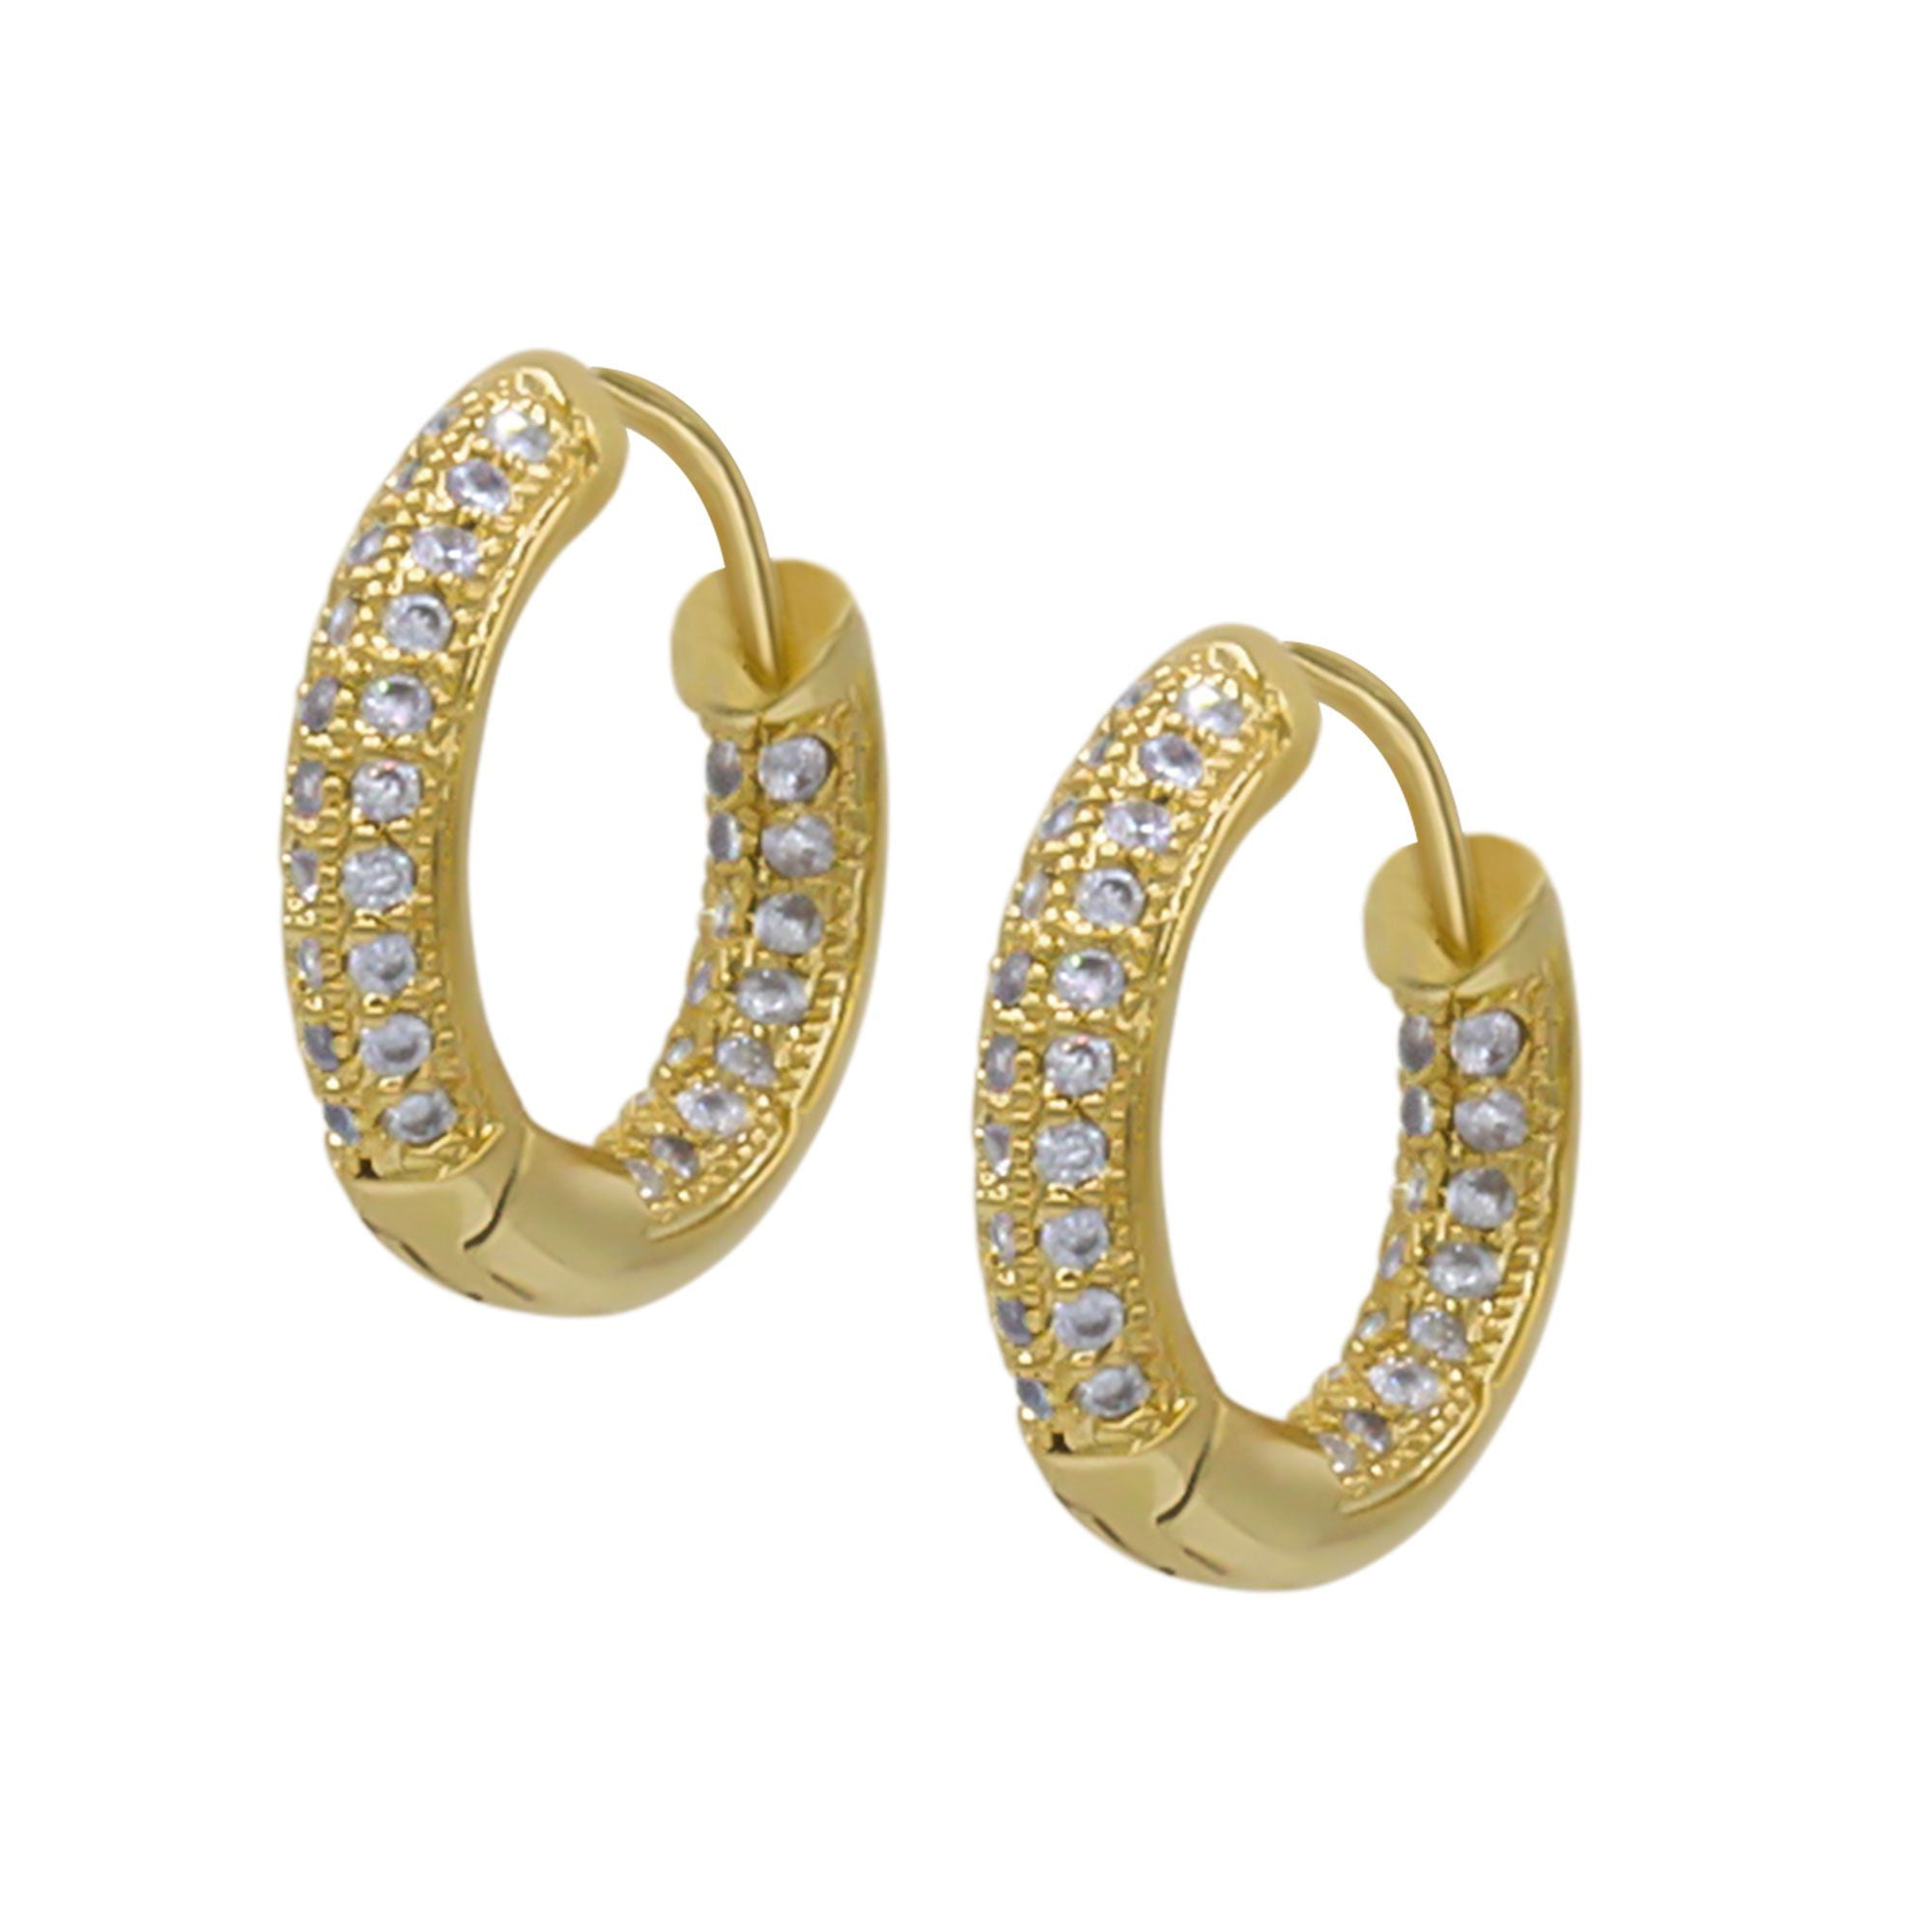 28mm X 6mm 14k Two-tone Gold Cubic Zirconia Dangle Huggies Earrings,